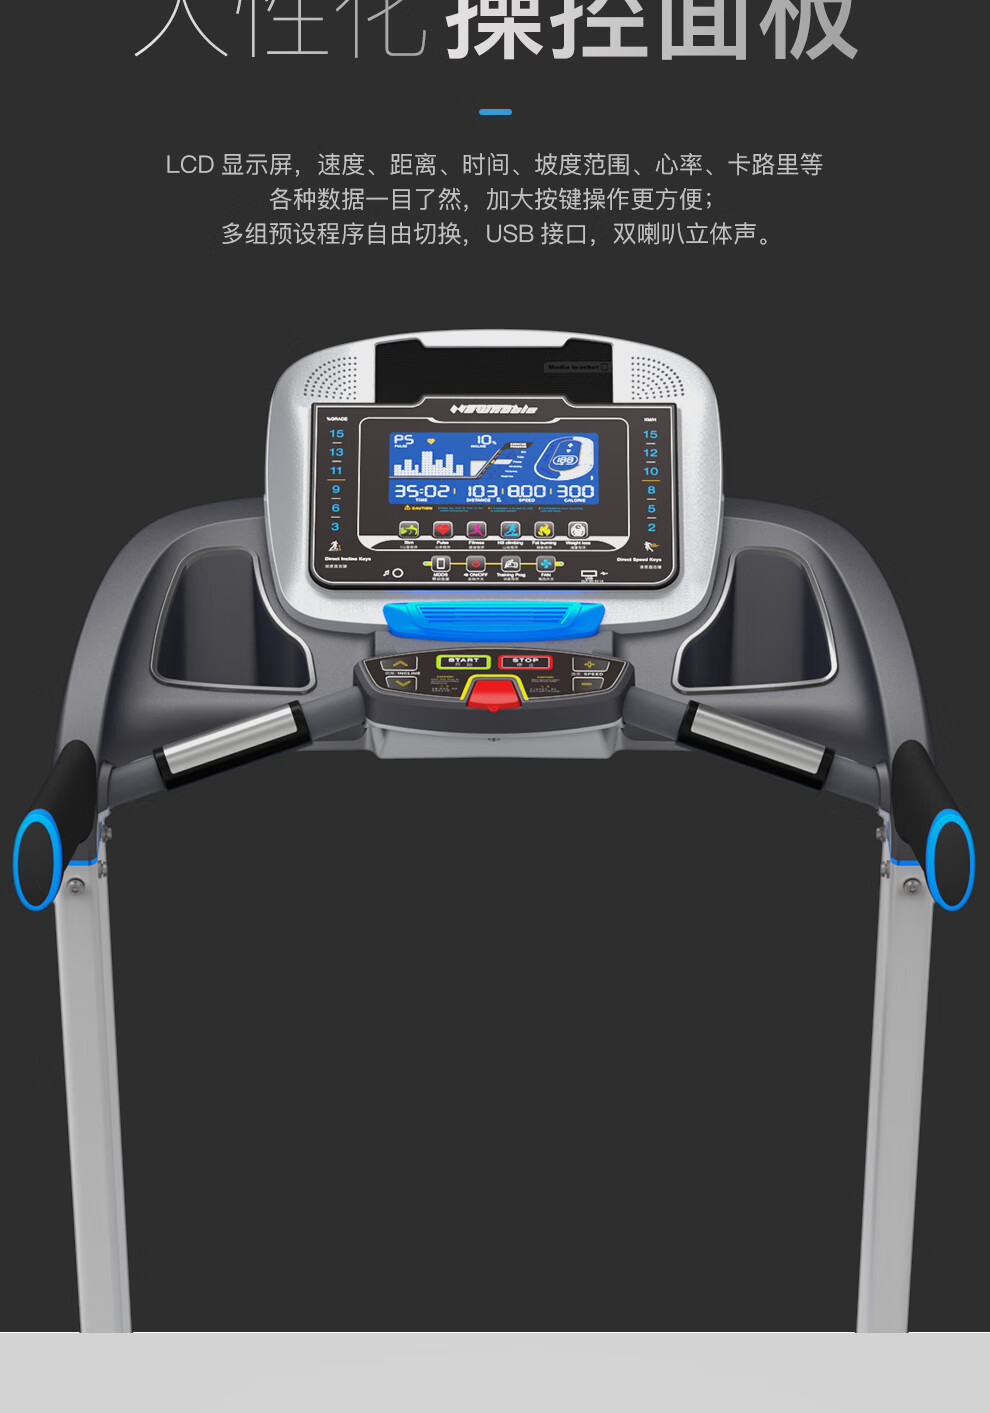 新贵族XG-V3多功能跑步机